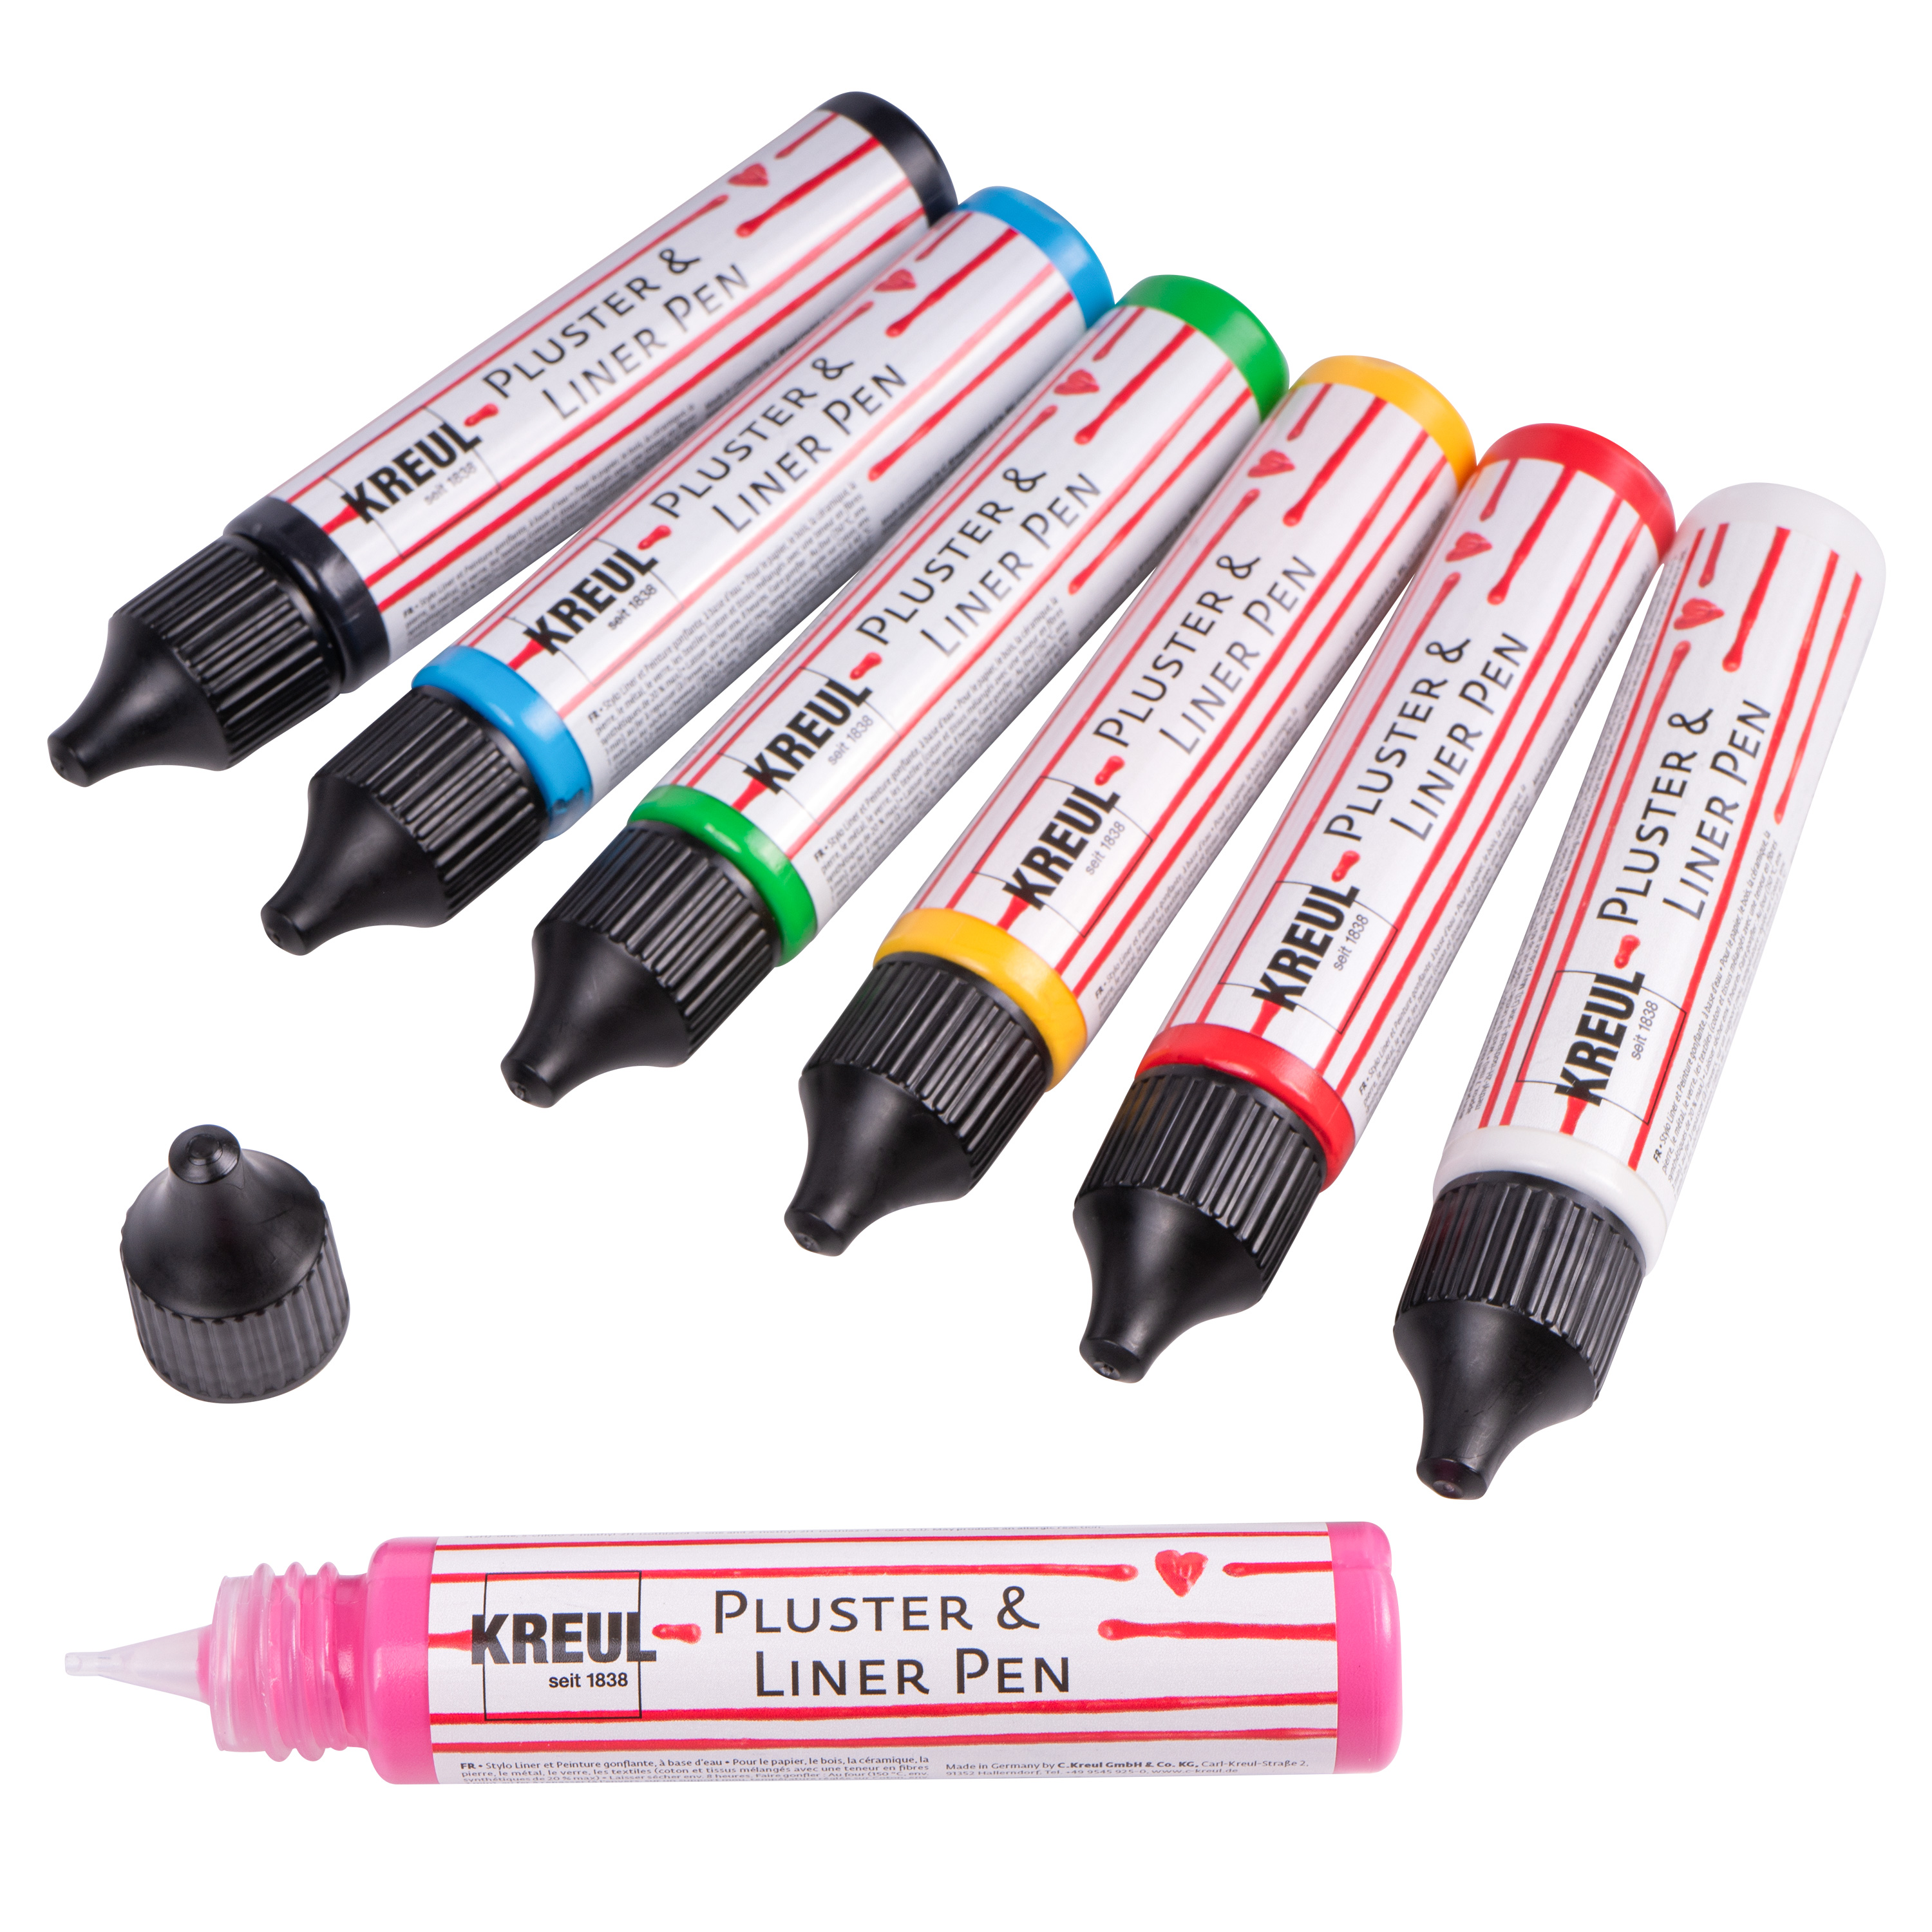 KREUL Pluster & Liner Pen, 29 ml, in Einzelfarben